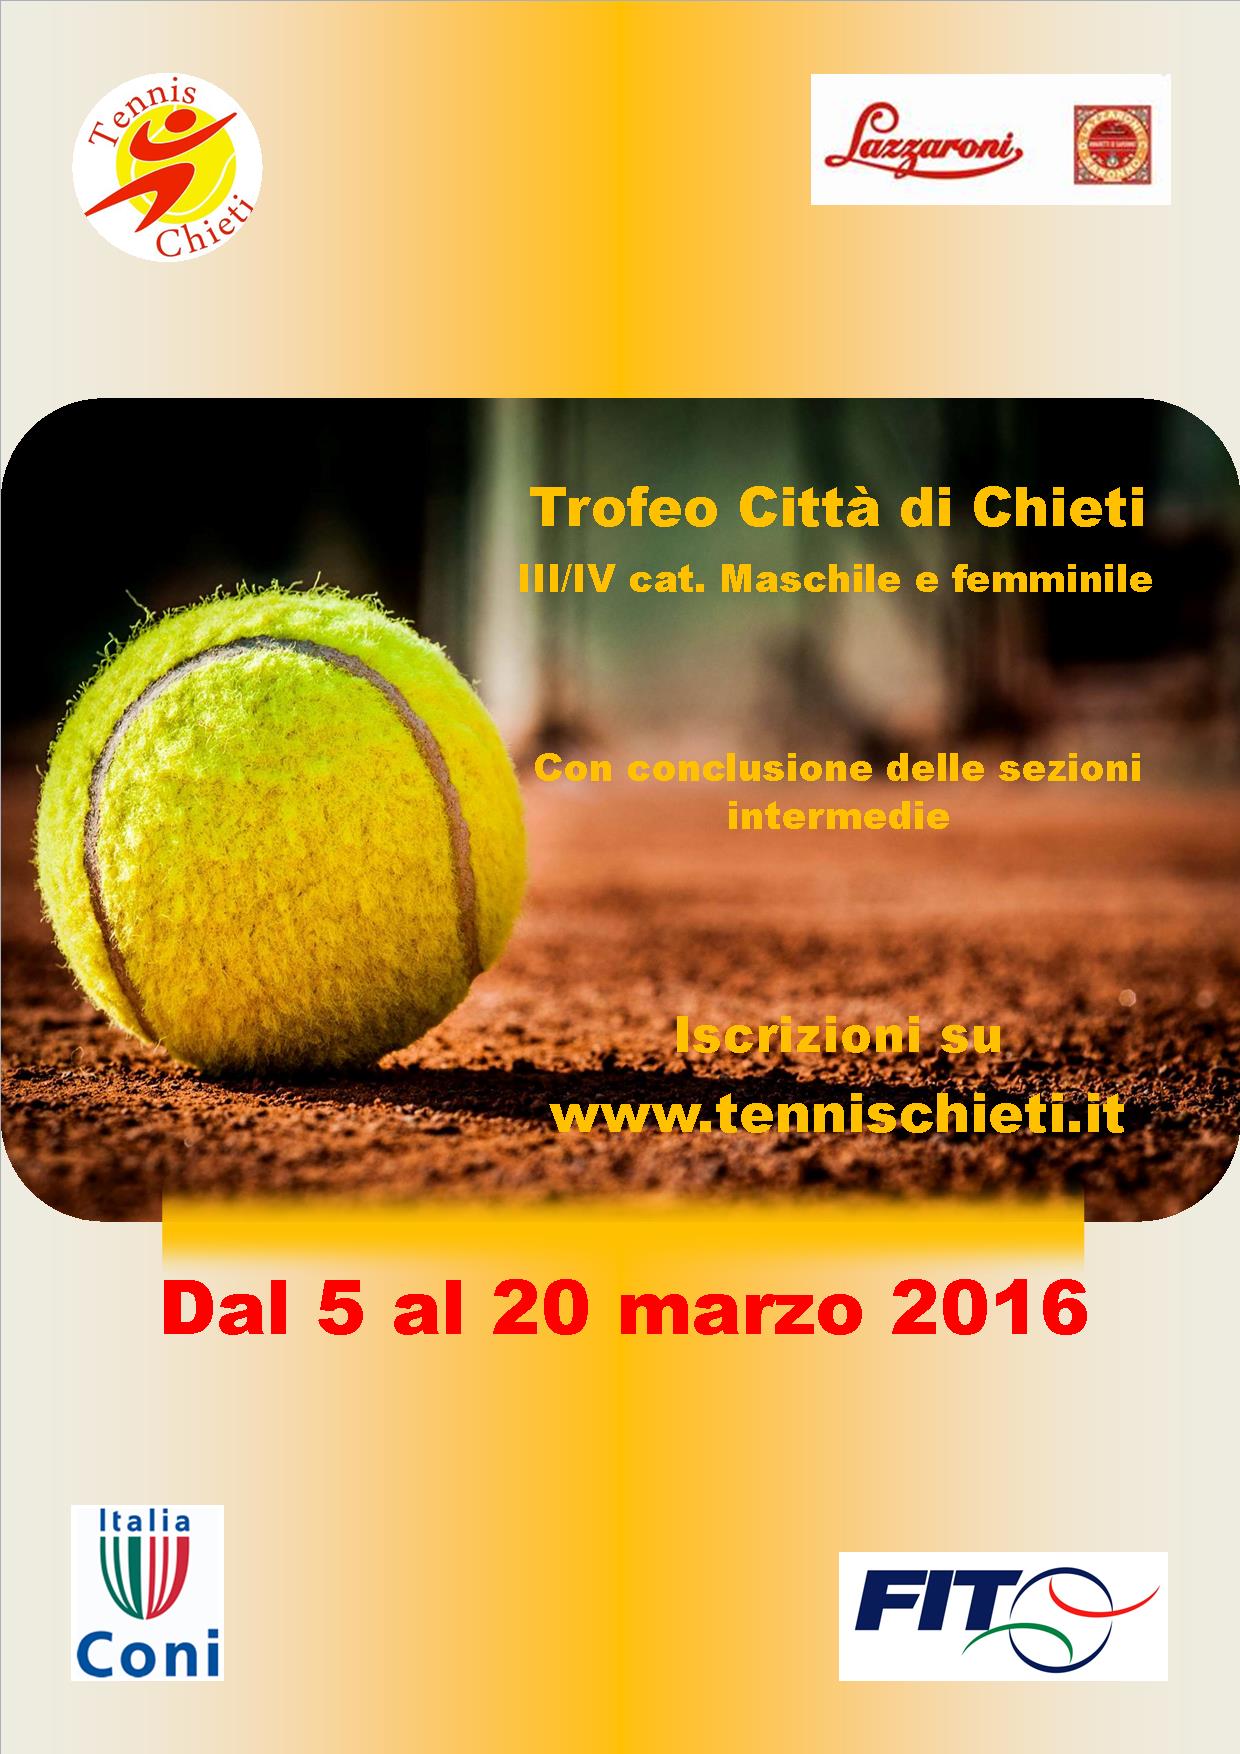 Torneo tennis Chieti